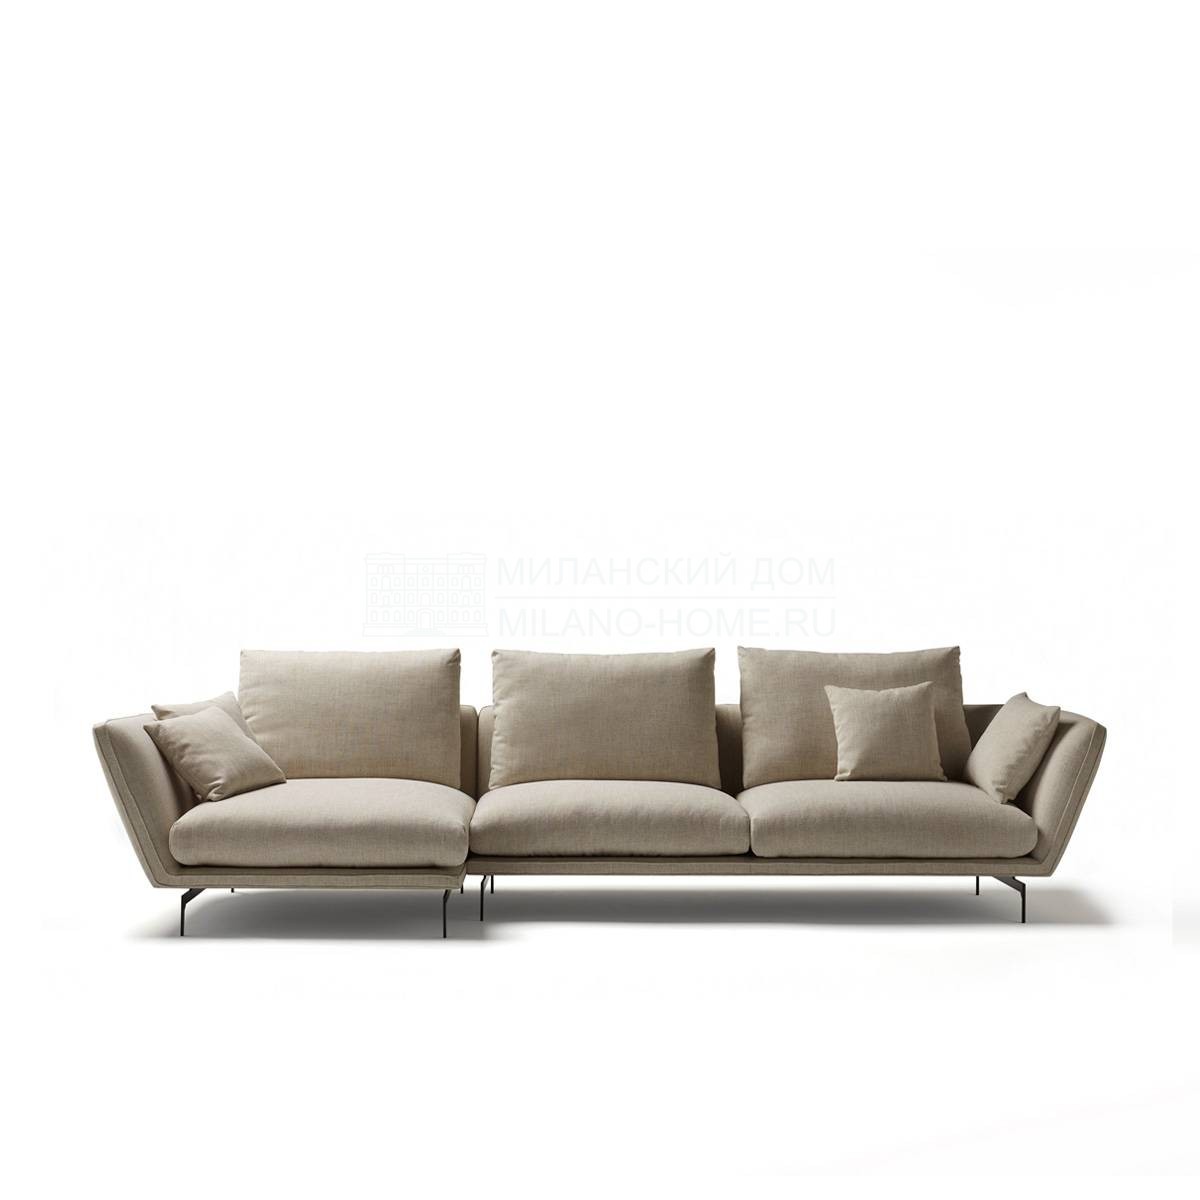 Угловой диван Disc corner sofa из Испании фабрики COLECCION ALEXANDRA